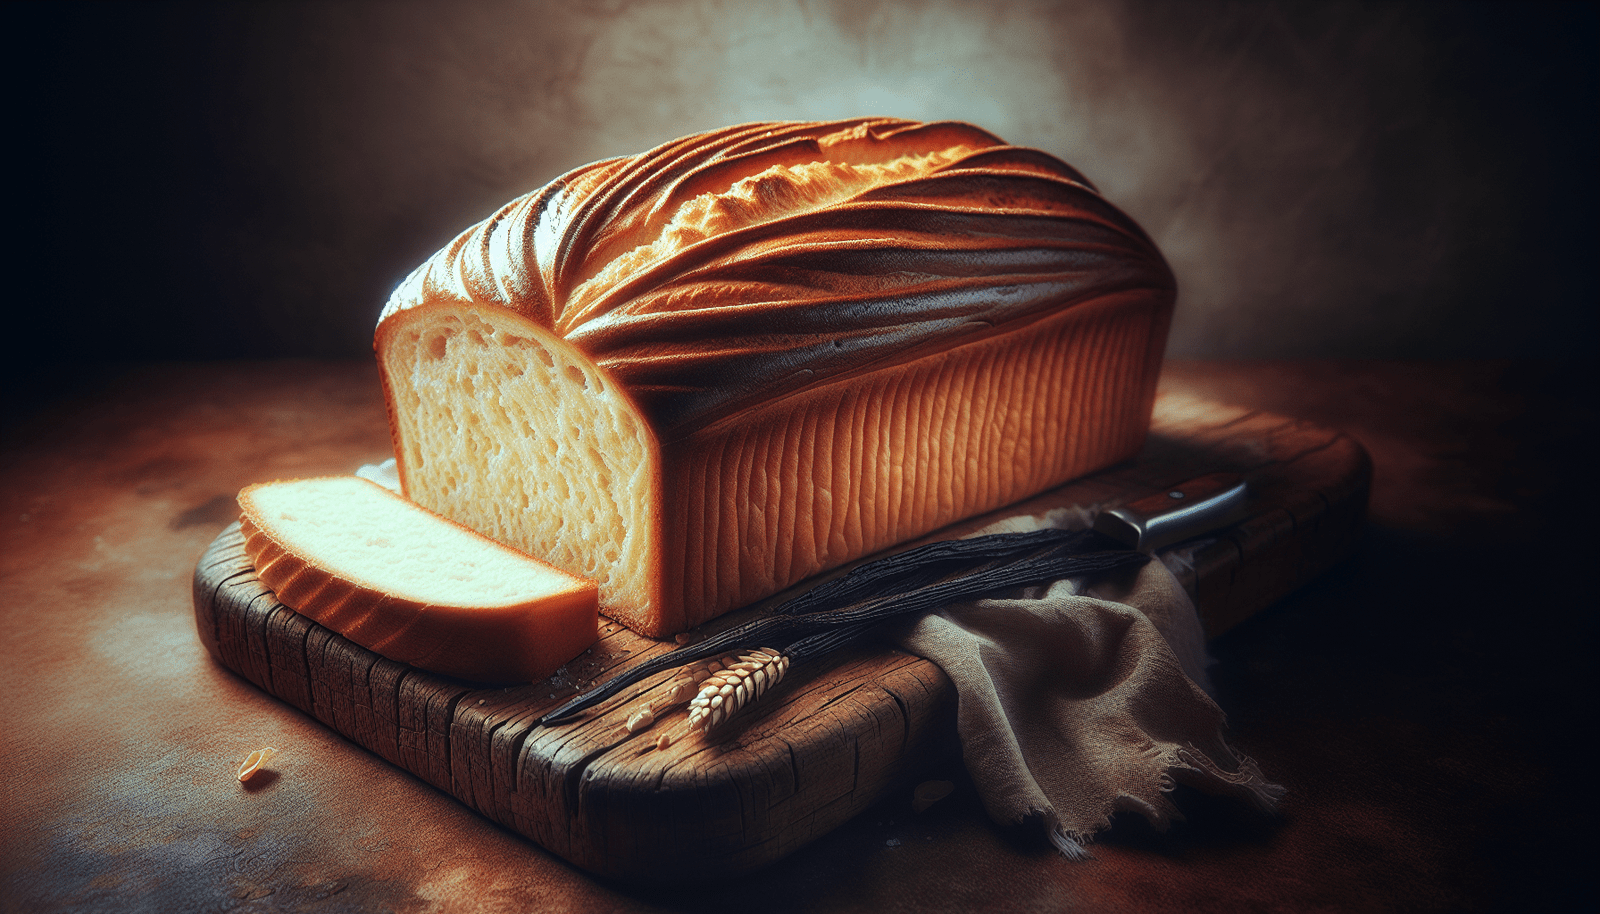 vanilla bread recipe